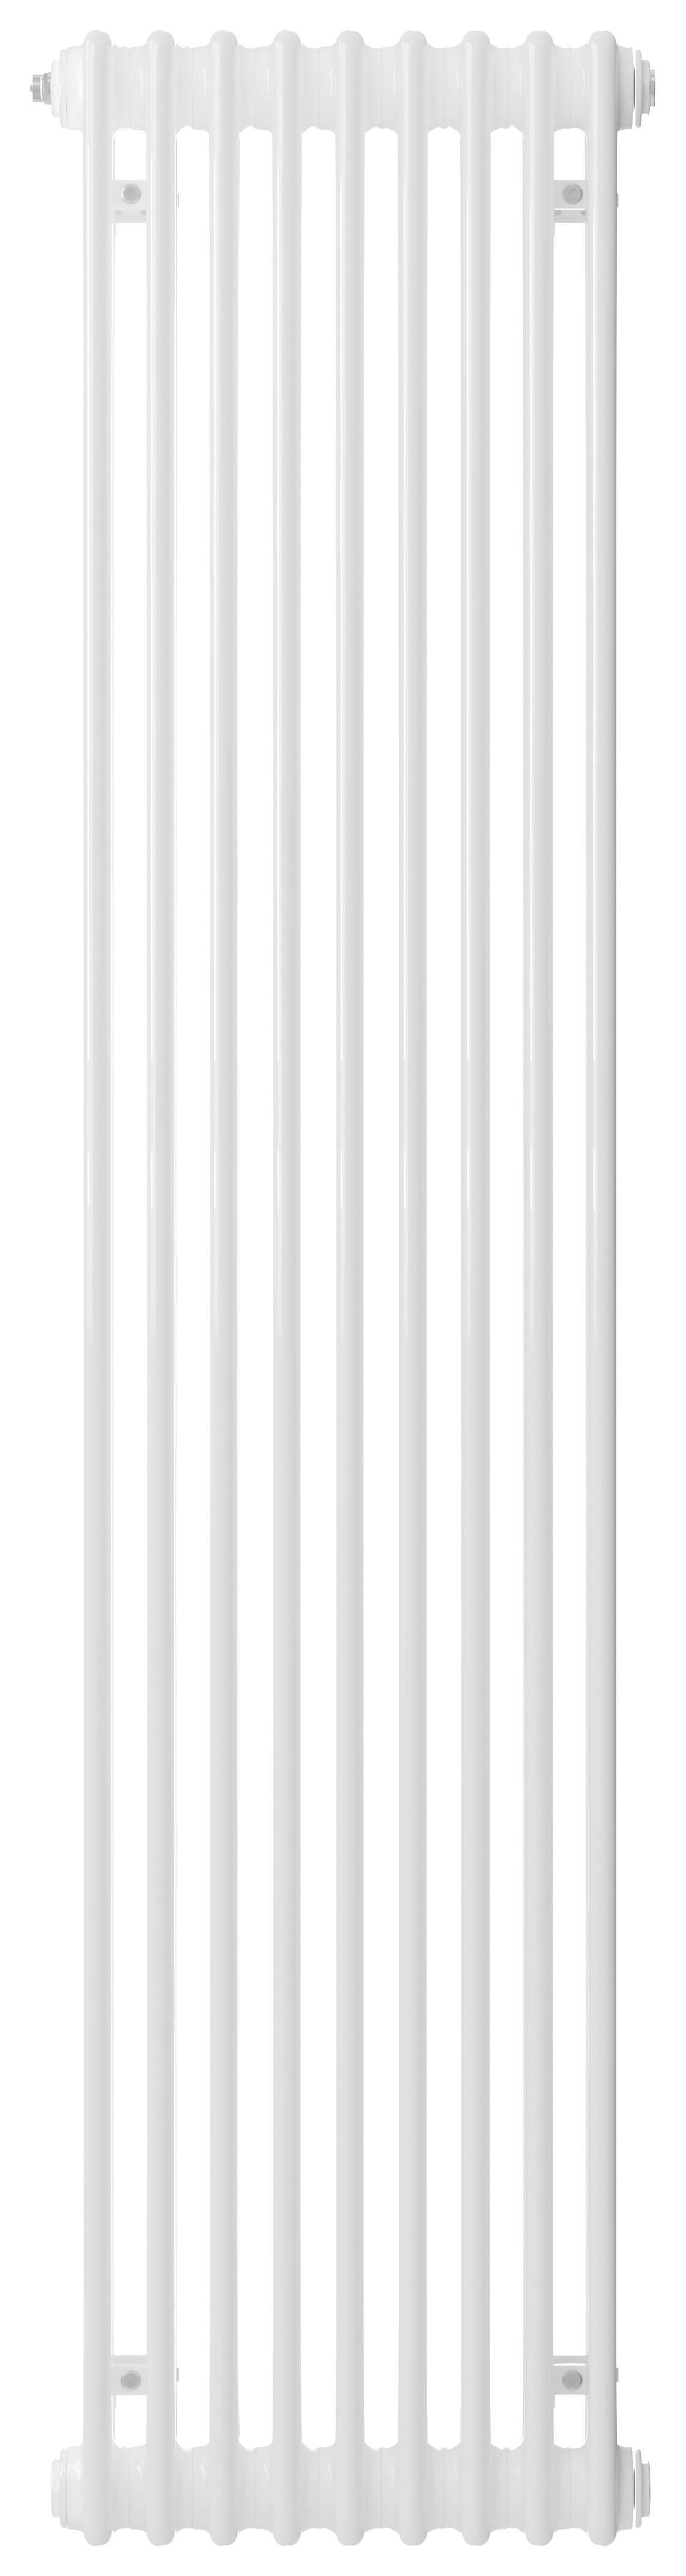 Image of Henrad 2 Column Vertical Designer Radiator - White 2000 x 440 mm